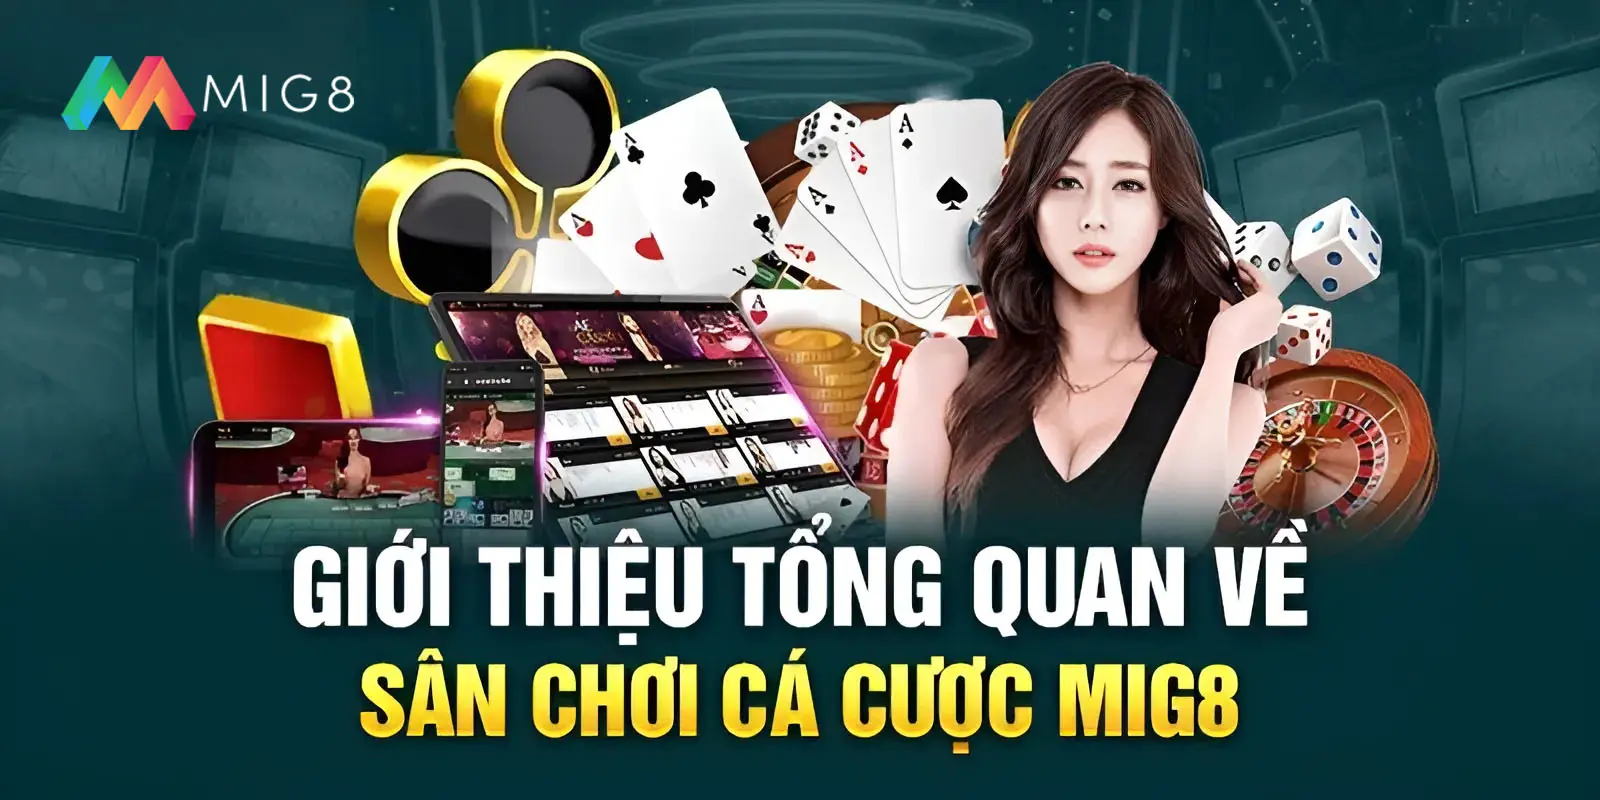 Tổng quan về thương hiệu casino Mig8